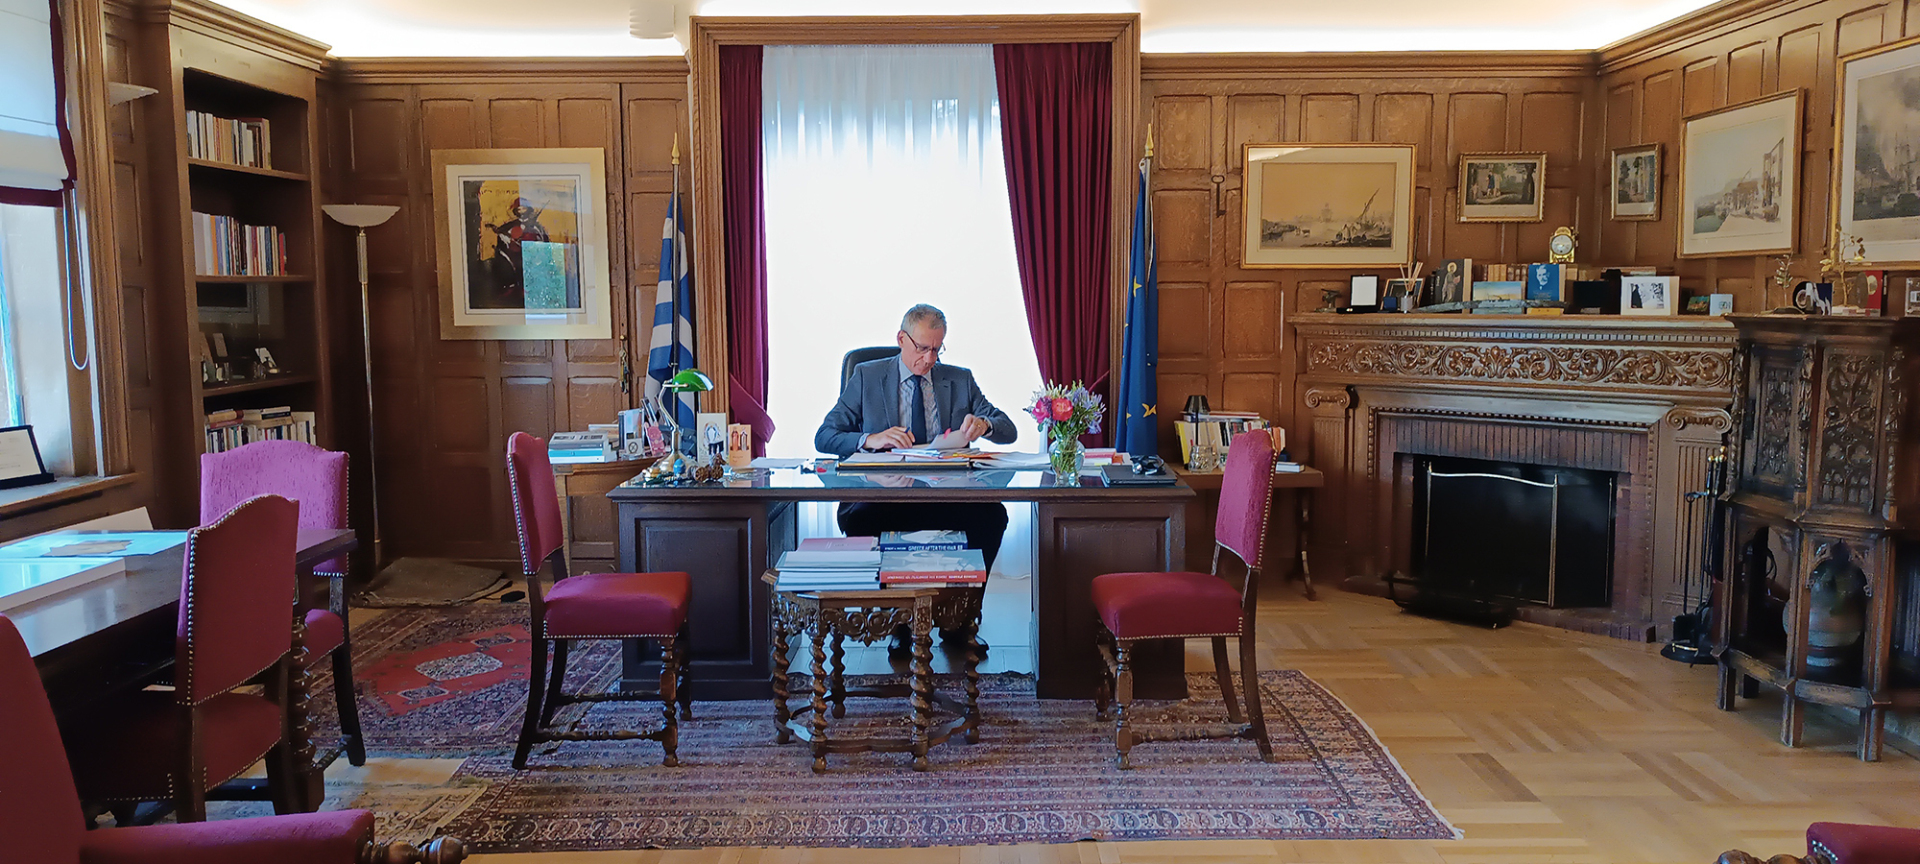 Ο Πρόεδρος του Ελληνικού Ιδρύματος Πολιτισμού, κος Ν. Κούκης, στο γραφείο του Πρόδρομου Μποδοσάκη